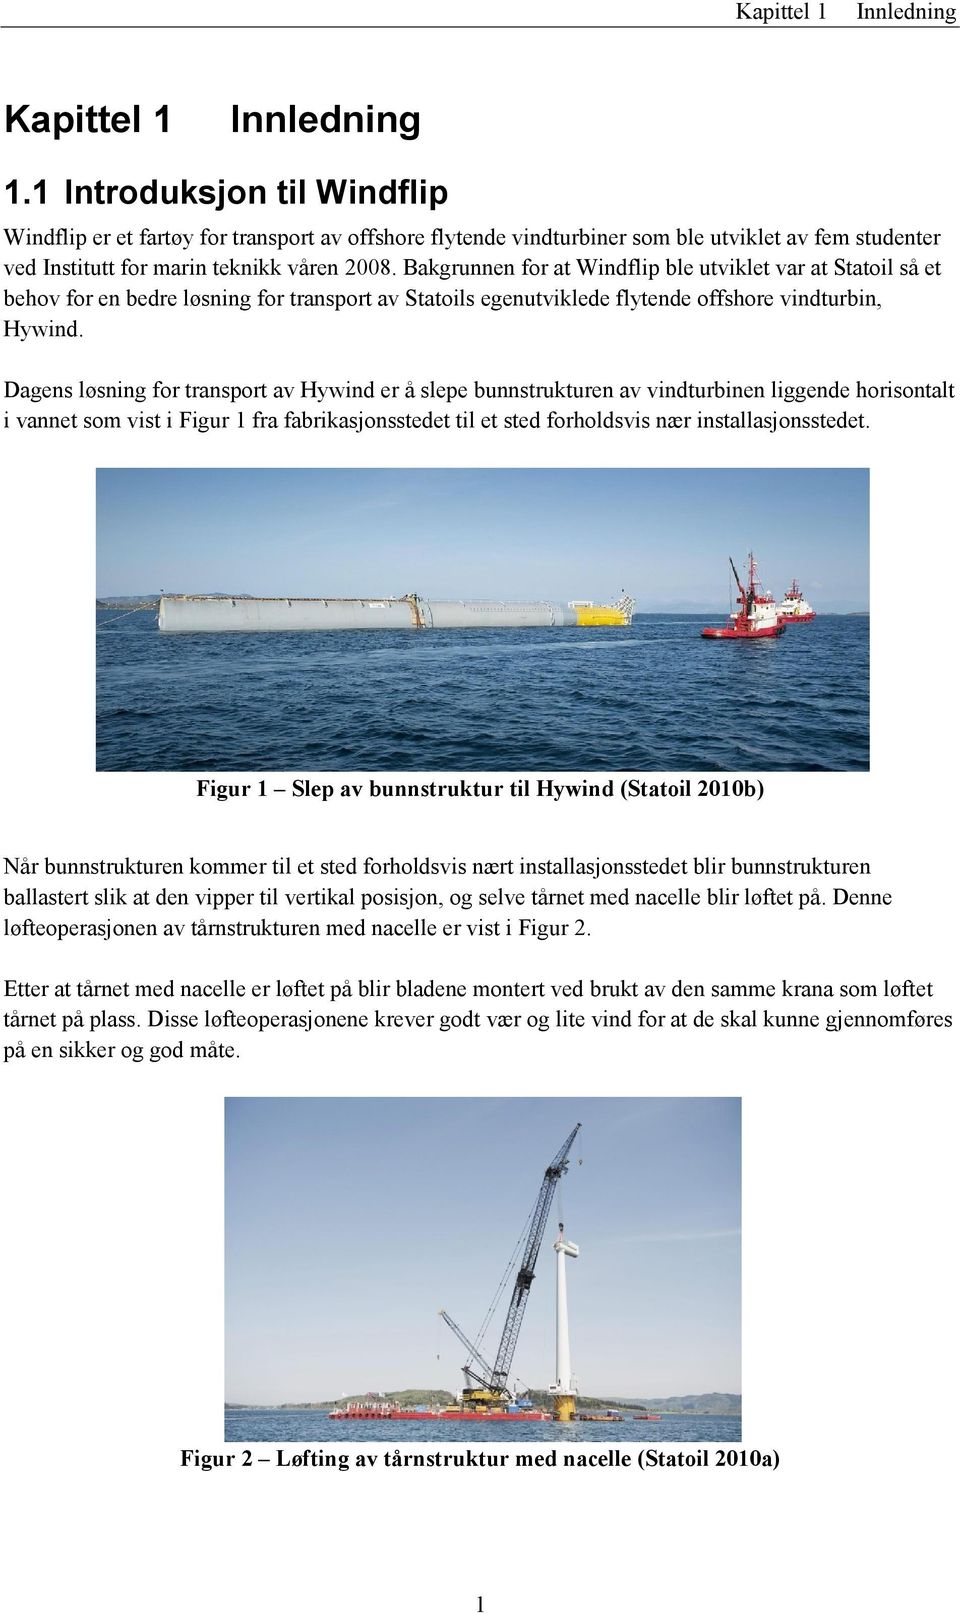 Bakgrunnen for at Windflip ble utviklet var at Statoil så et behov for en bedre løsning for transport av Statoils egenutviklede flytende offshore vindturbin, Hywind.